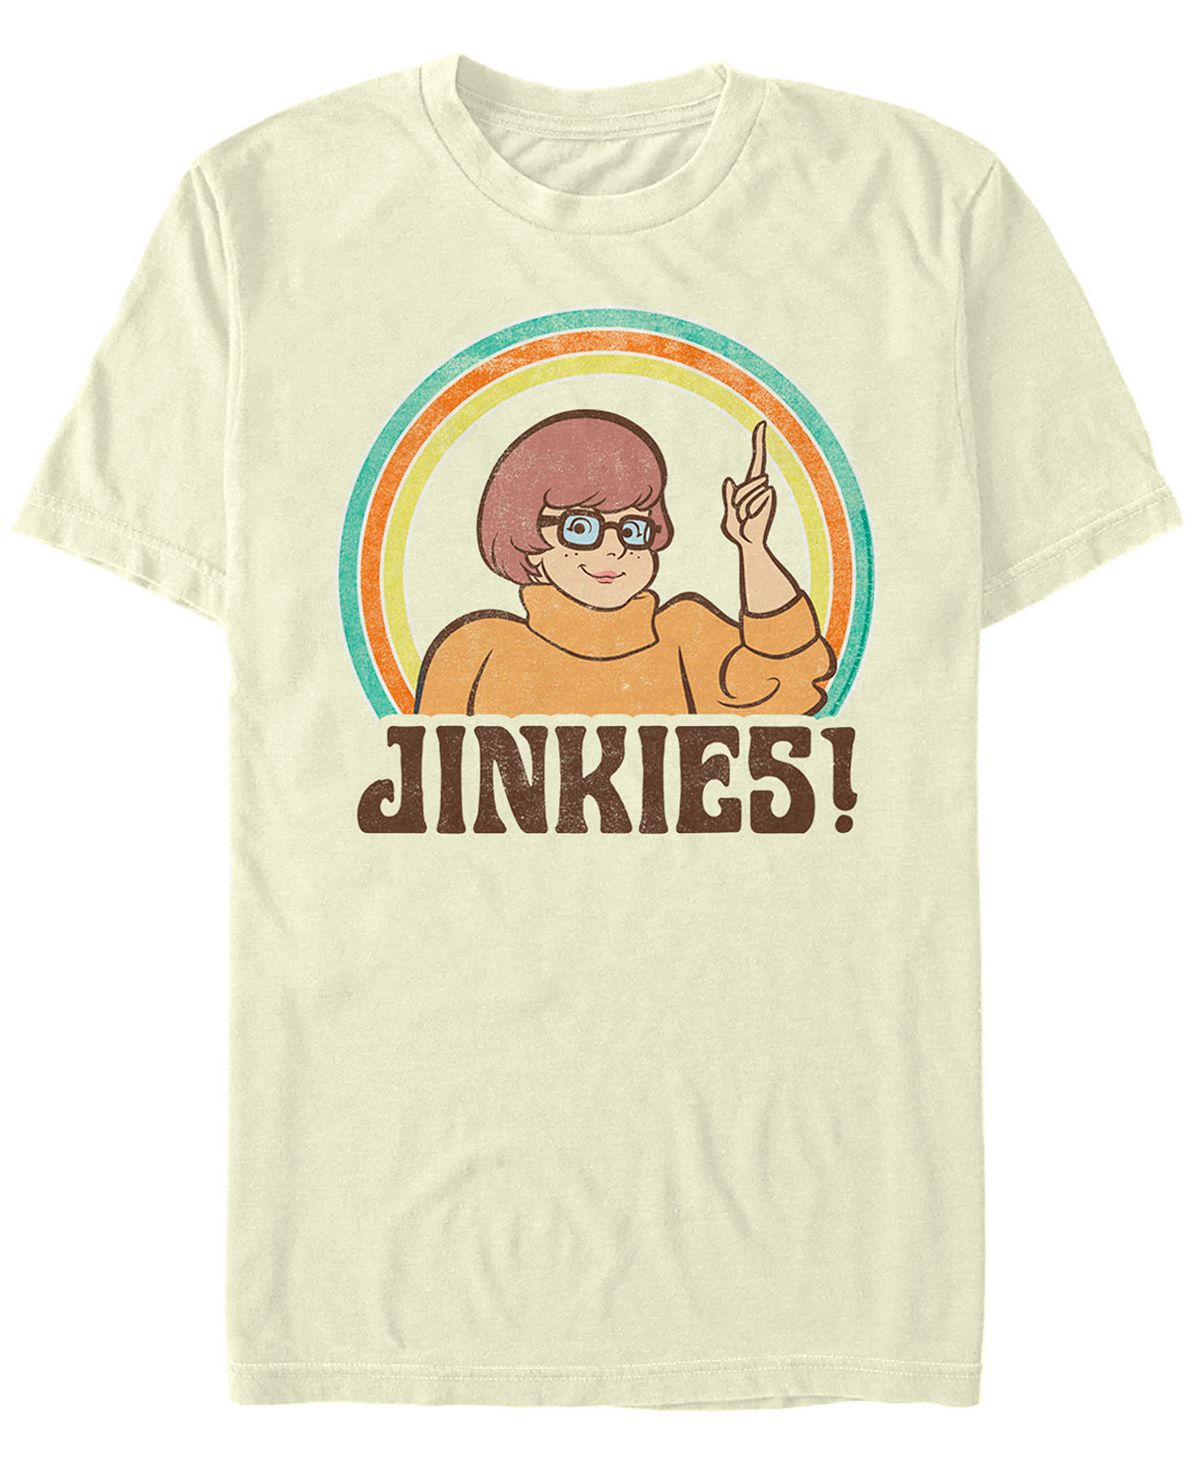 Мужская футболка с коротким рукавом Scooby-Doo Velma Jinkies Fifth Sun мужская футболка с короткими рукавами rainbow monster box up scooby doo fifth sun черный